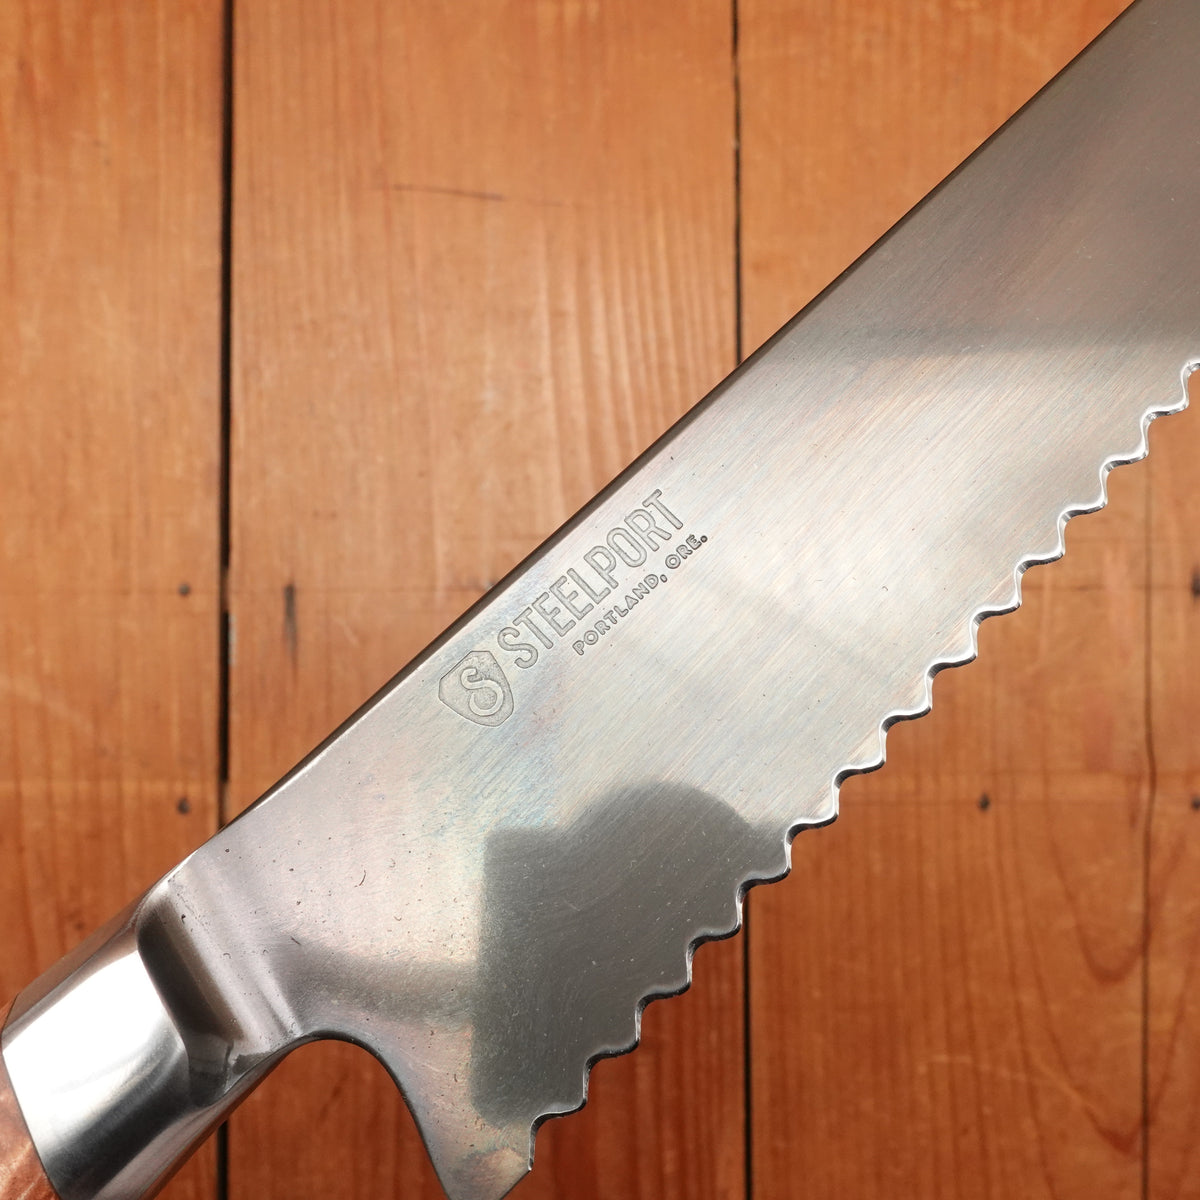 Steelport 10” Bread Knife 52100 Carbon Steel Stabilized Maple